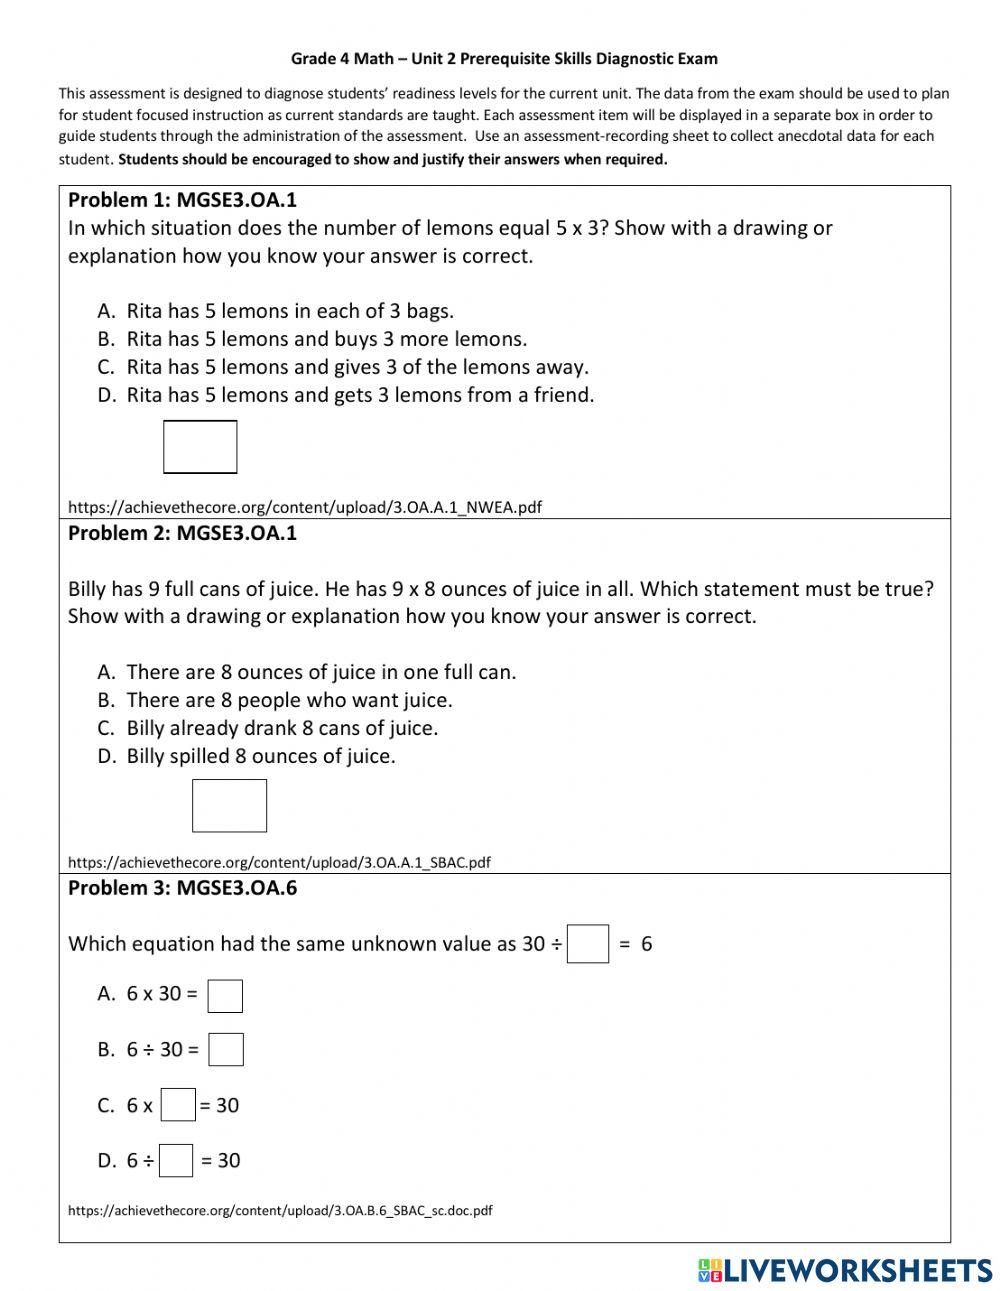 Grade 4 Math- Unit 2 Prerequisite Diagnostic Skills Exam